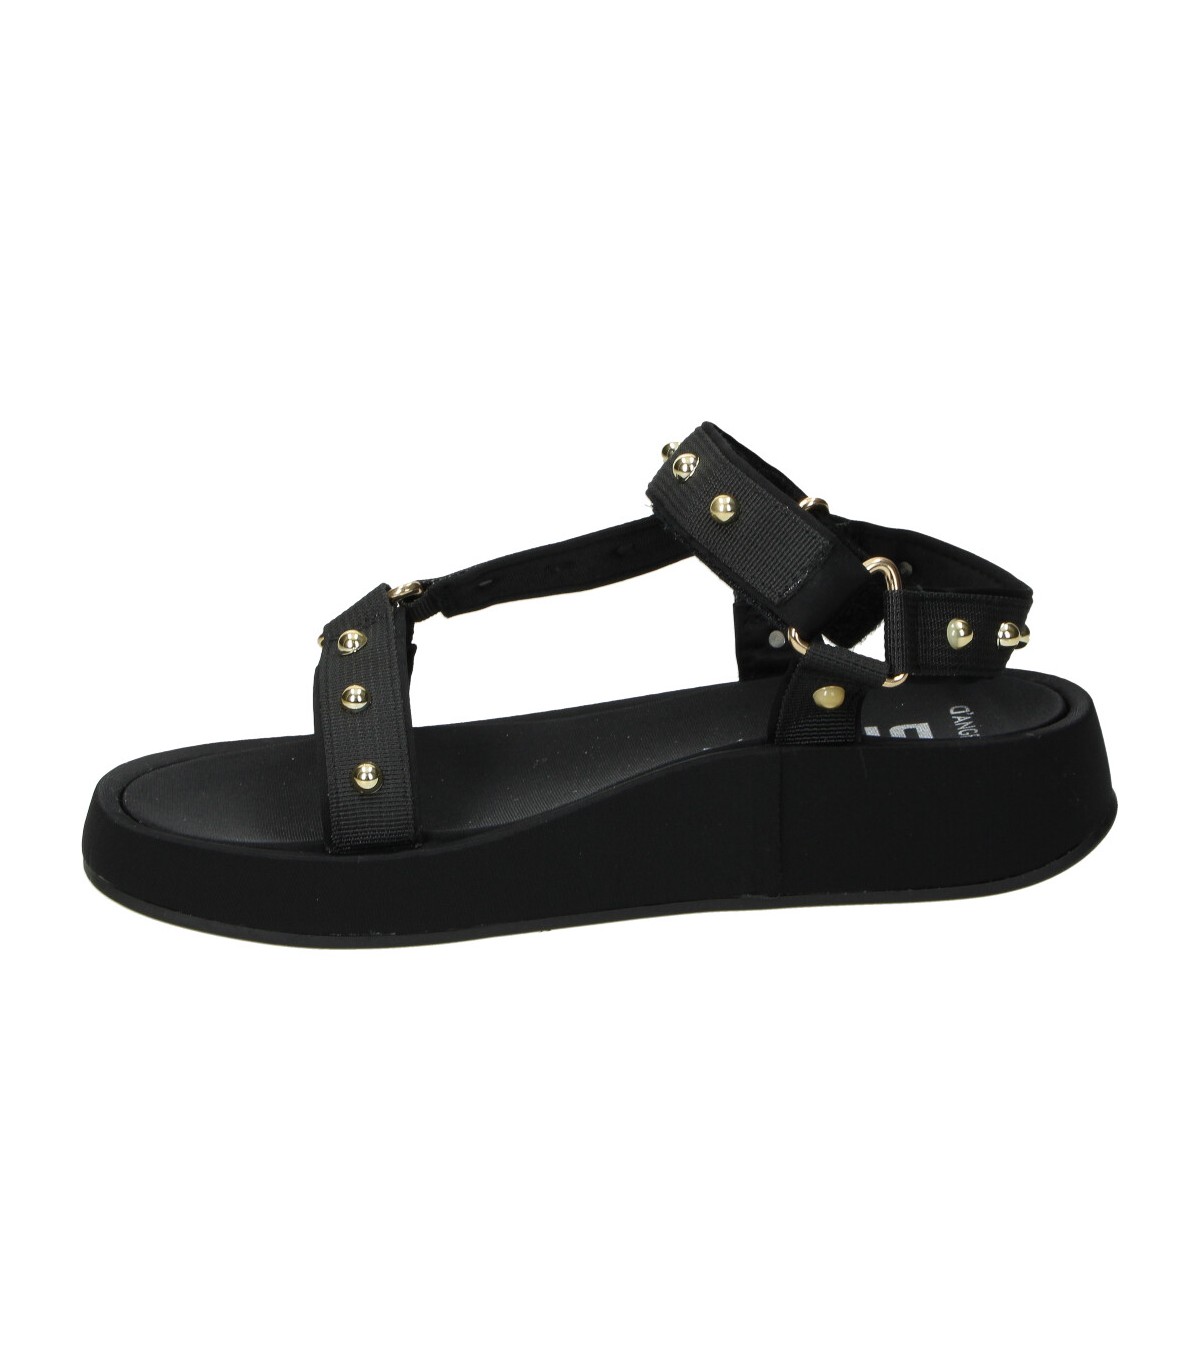  Streetwear - Sandalias negras para hombre y mujer, sandalias de  diseño de la marca SkullBoxx, sandalias negras con diseño blanco y gris,  sandalias de plataforma de 1 pulgada